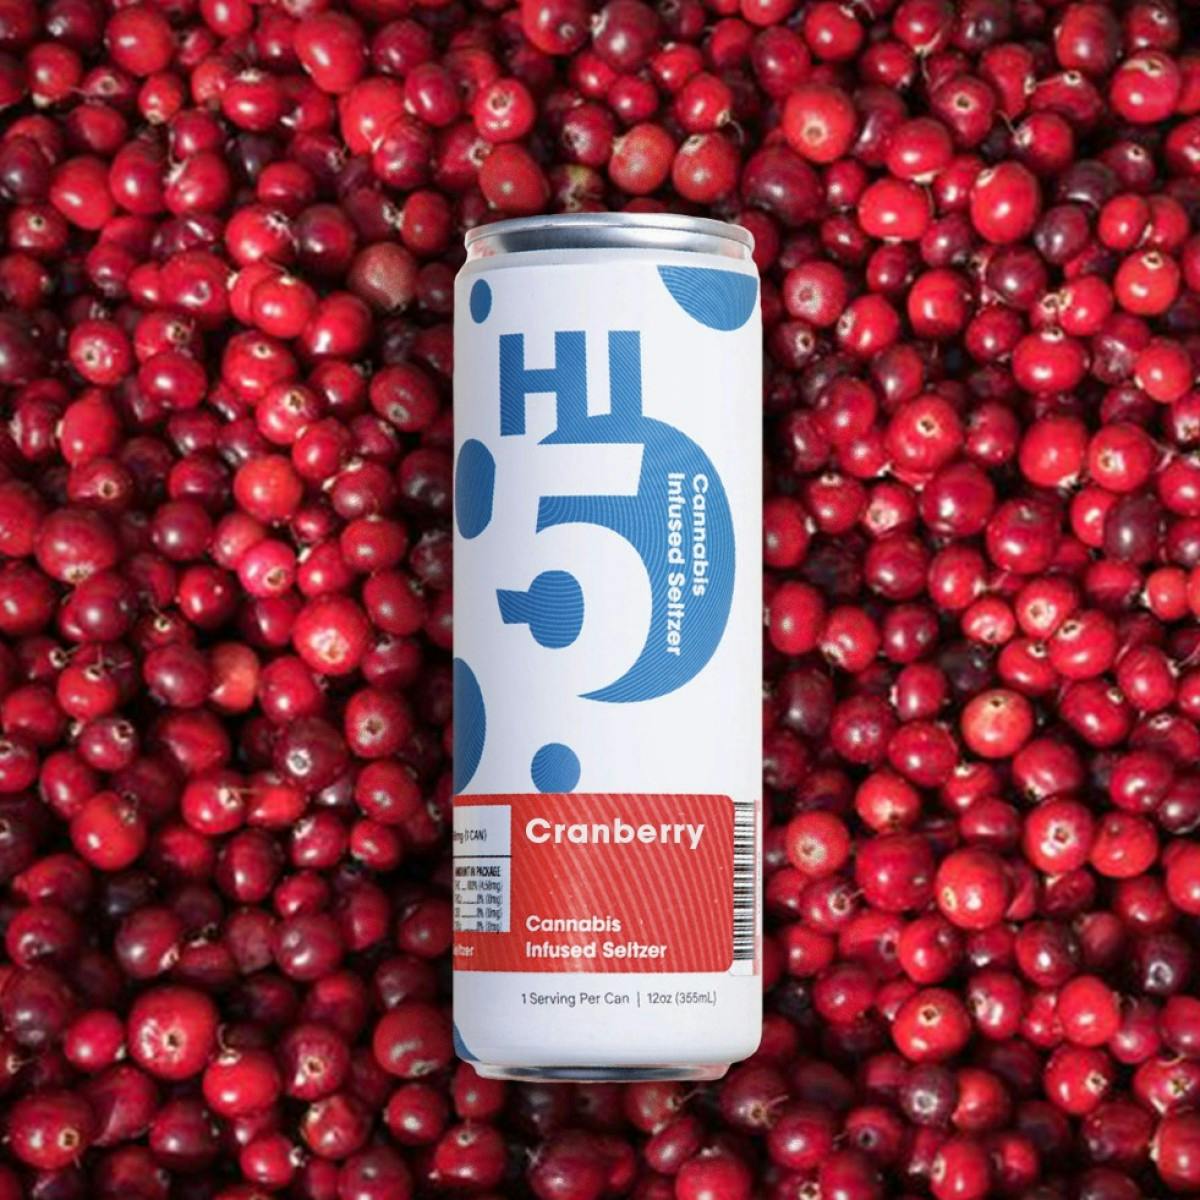 Hi5 Seltzer - 5 mg THC - Cranberry